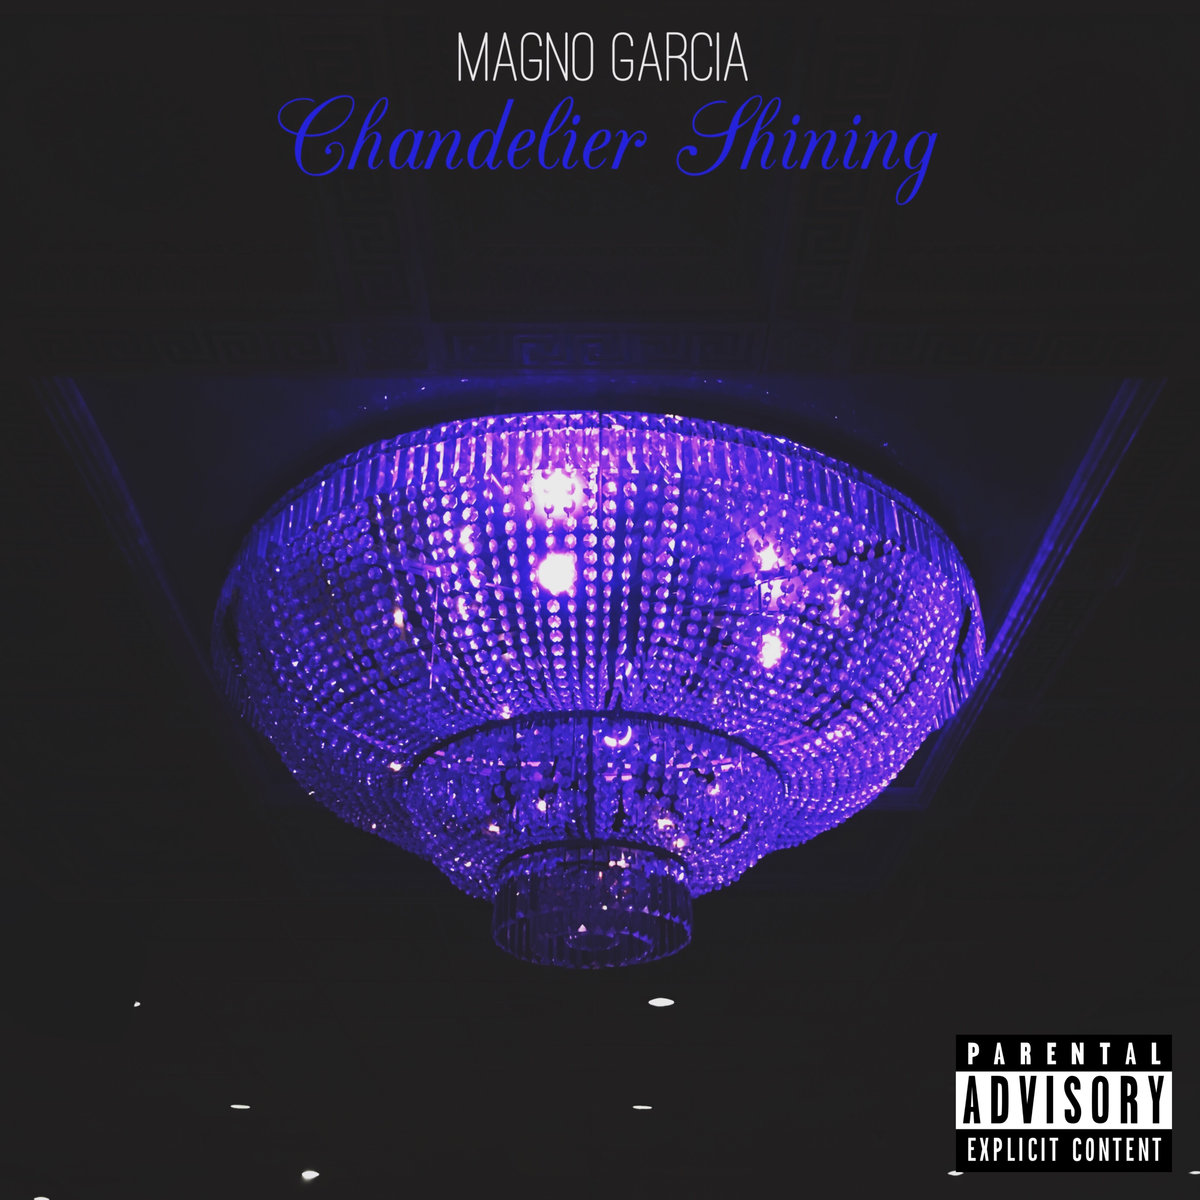 Magno_garcia_chandelier_shining